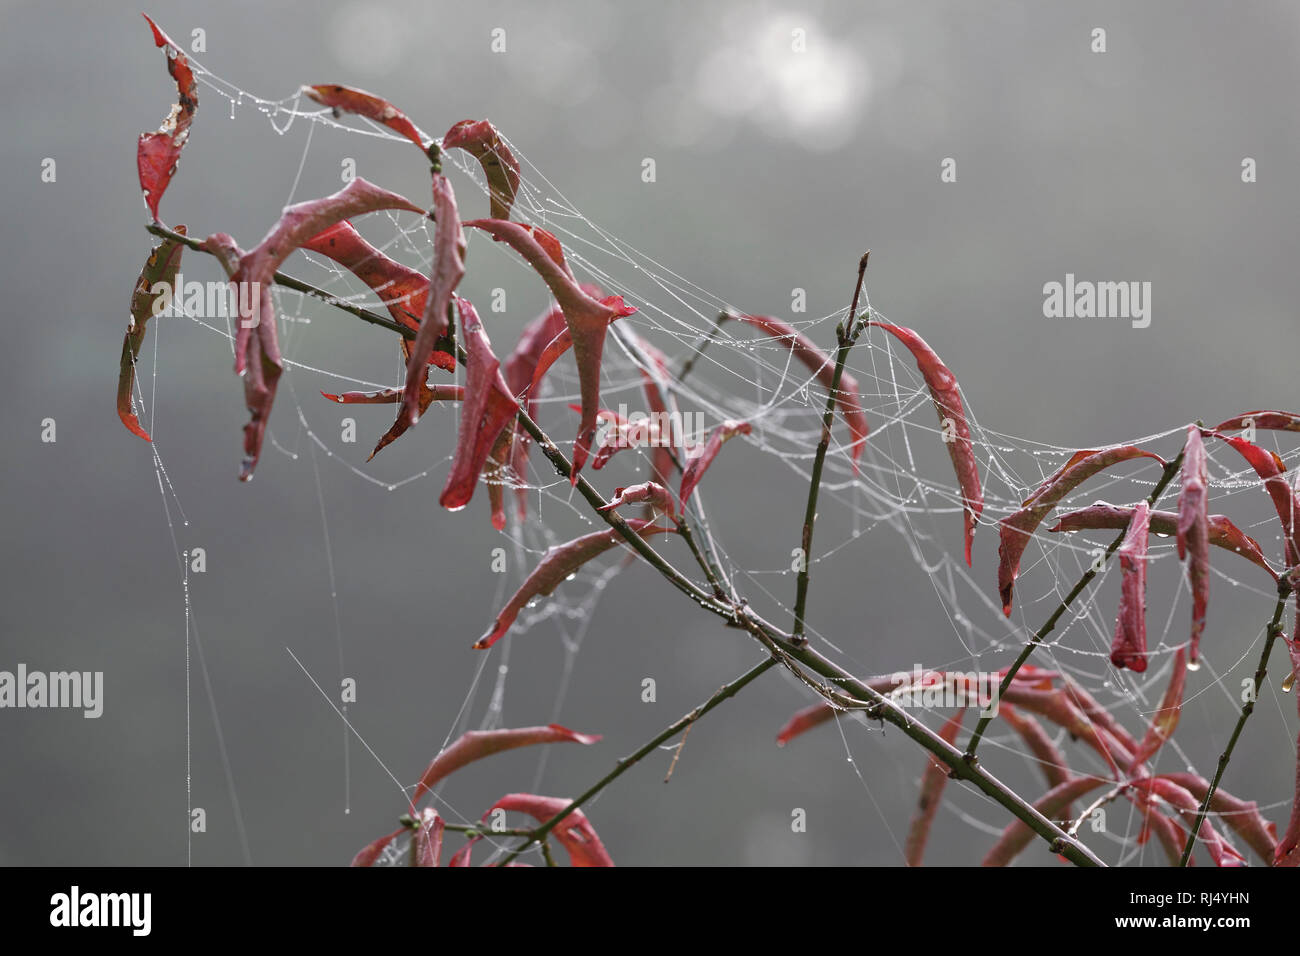 Spinnennetz im Morgentau und Nebel Stock Photo